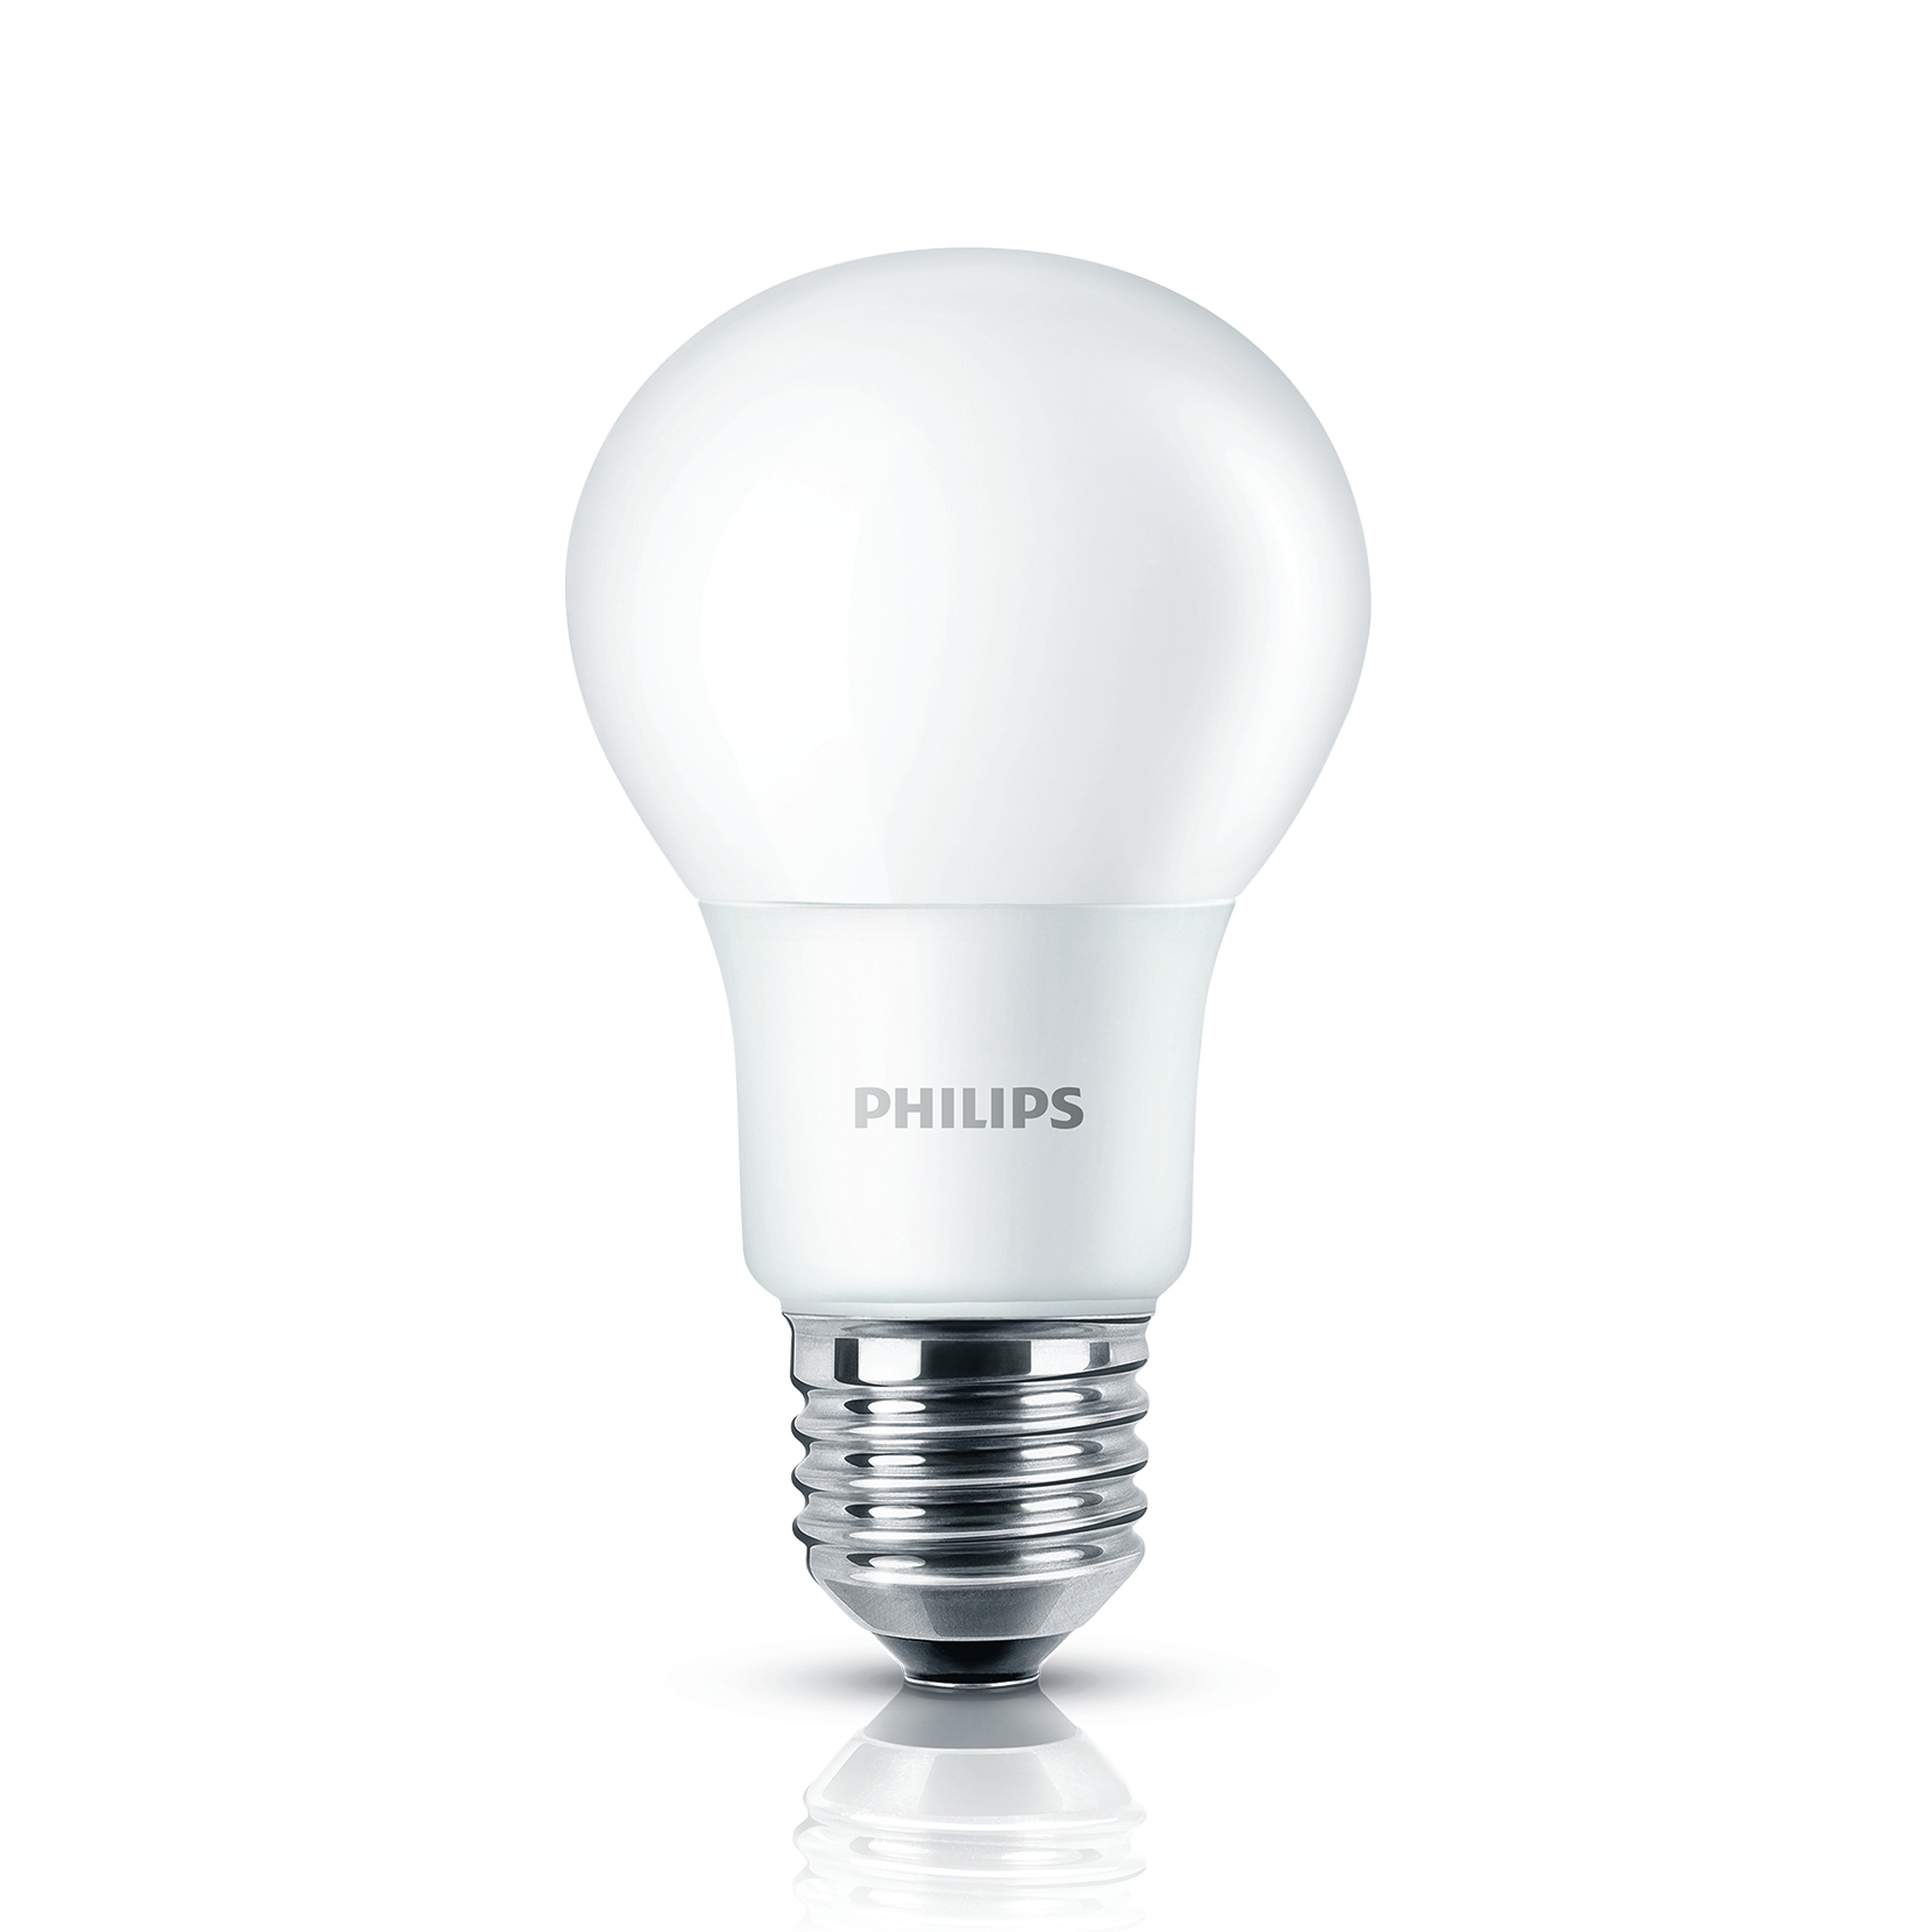 Philips CorePro LEDbulb 5-40W A60 E27 840 diffuse 4000K 470lm